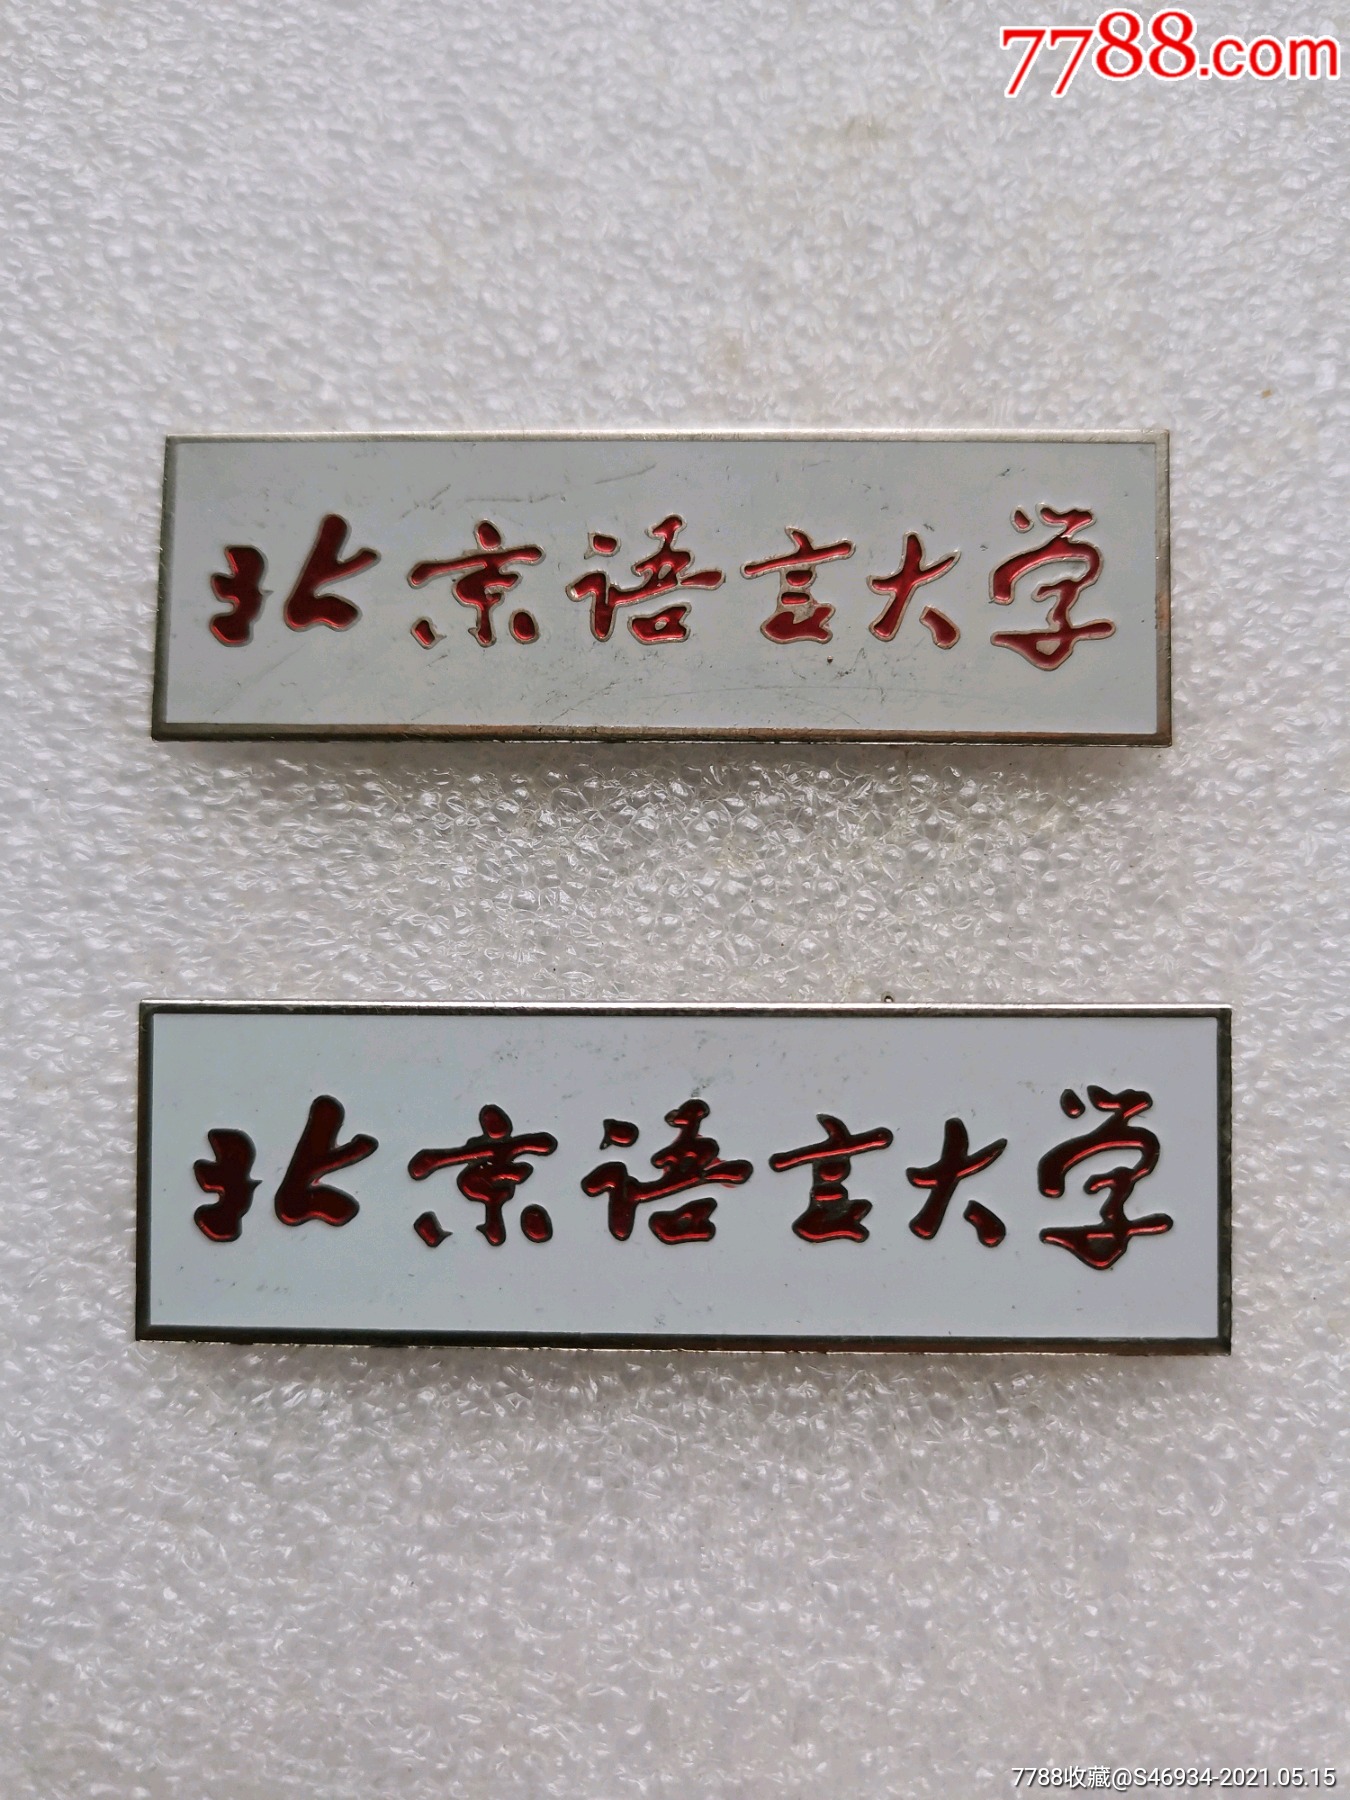 北京语言大学校徽2枚合售